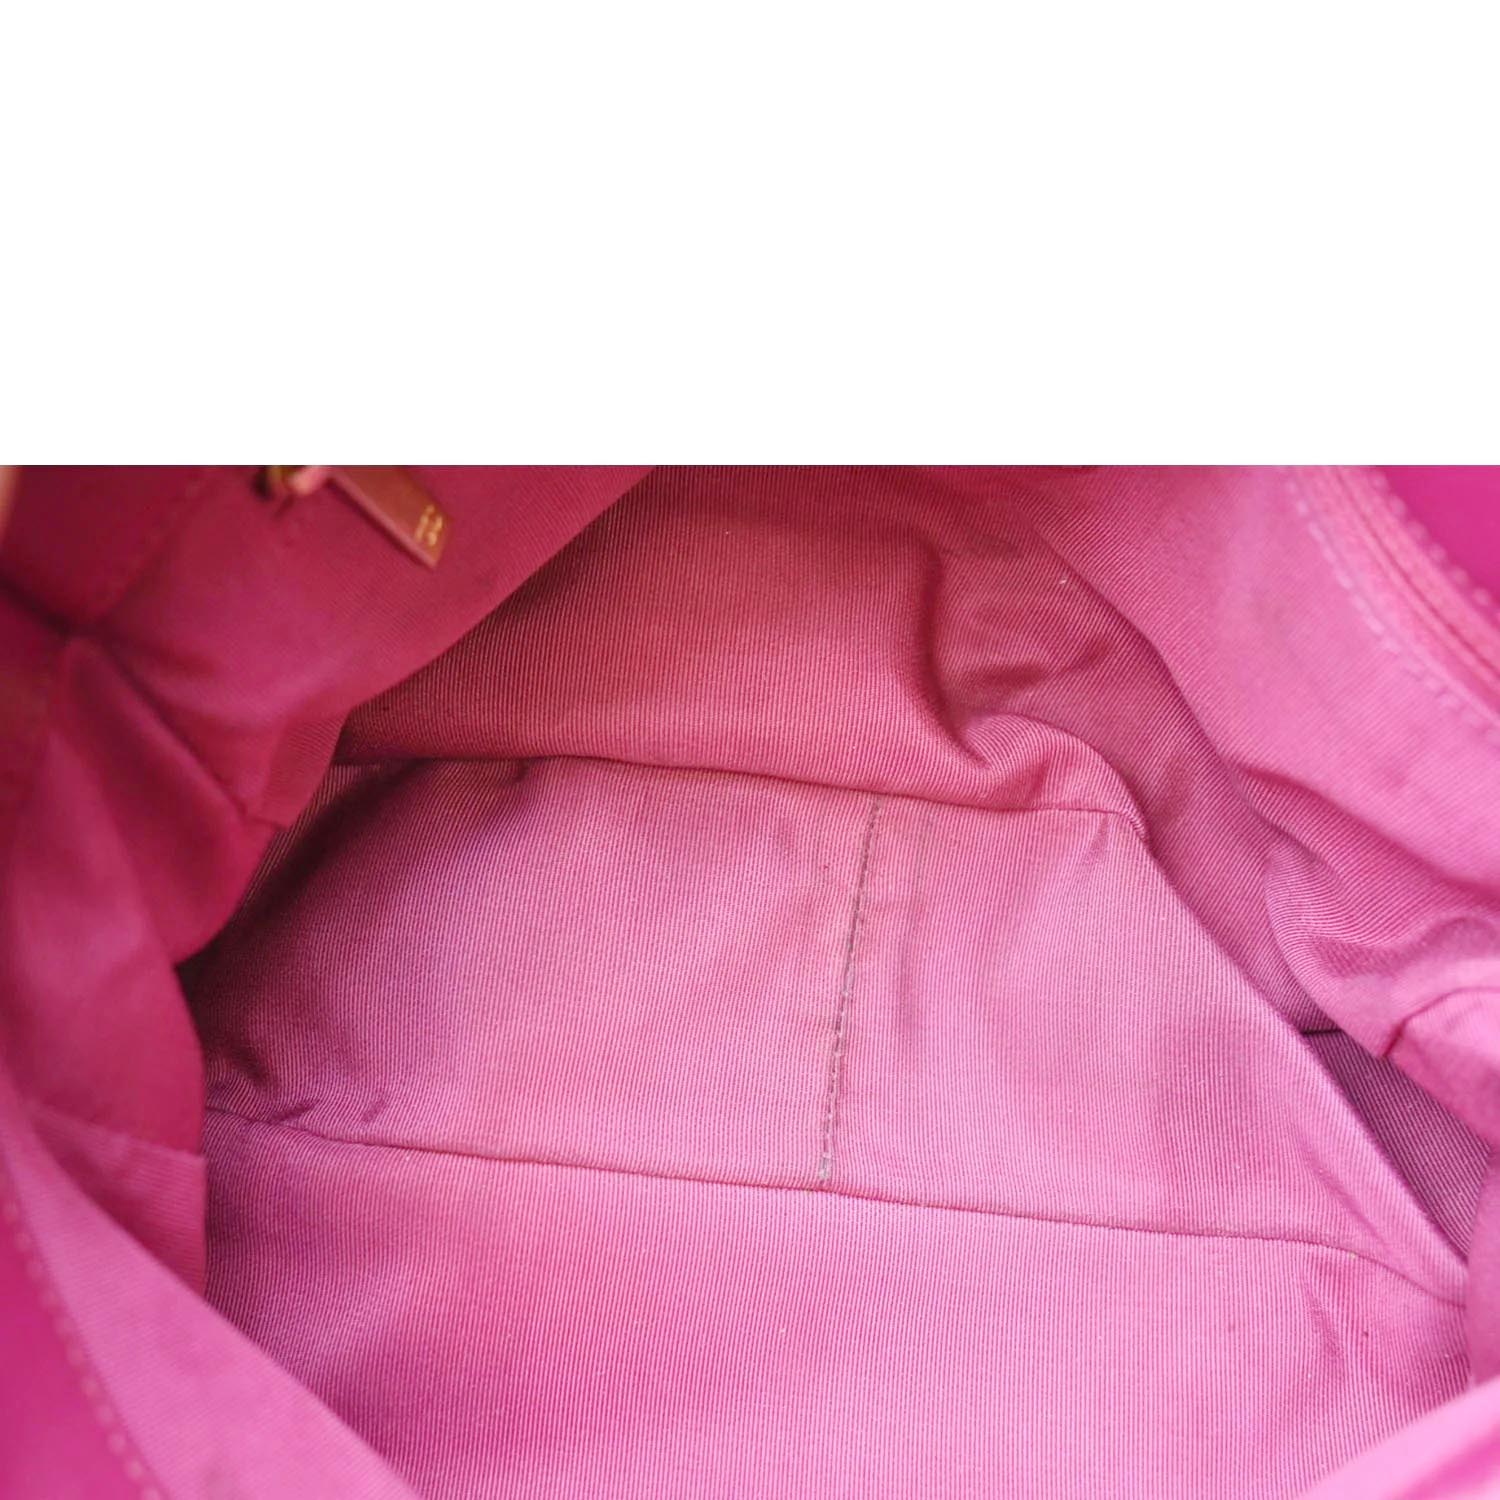 neon pink chanel 19 bag